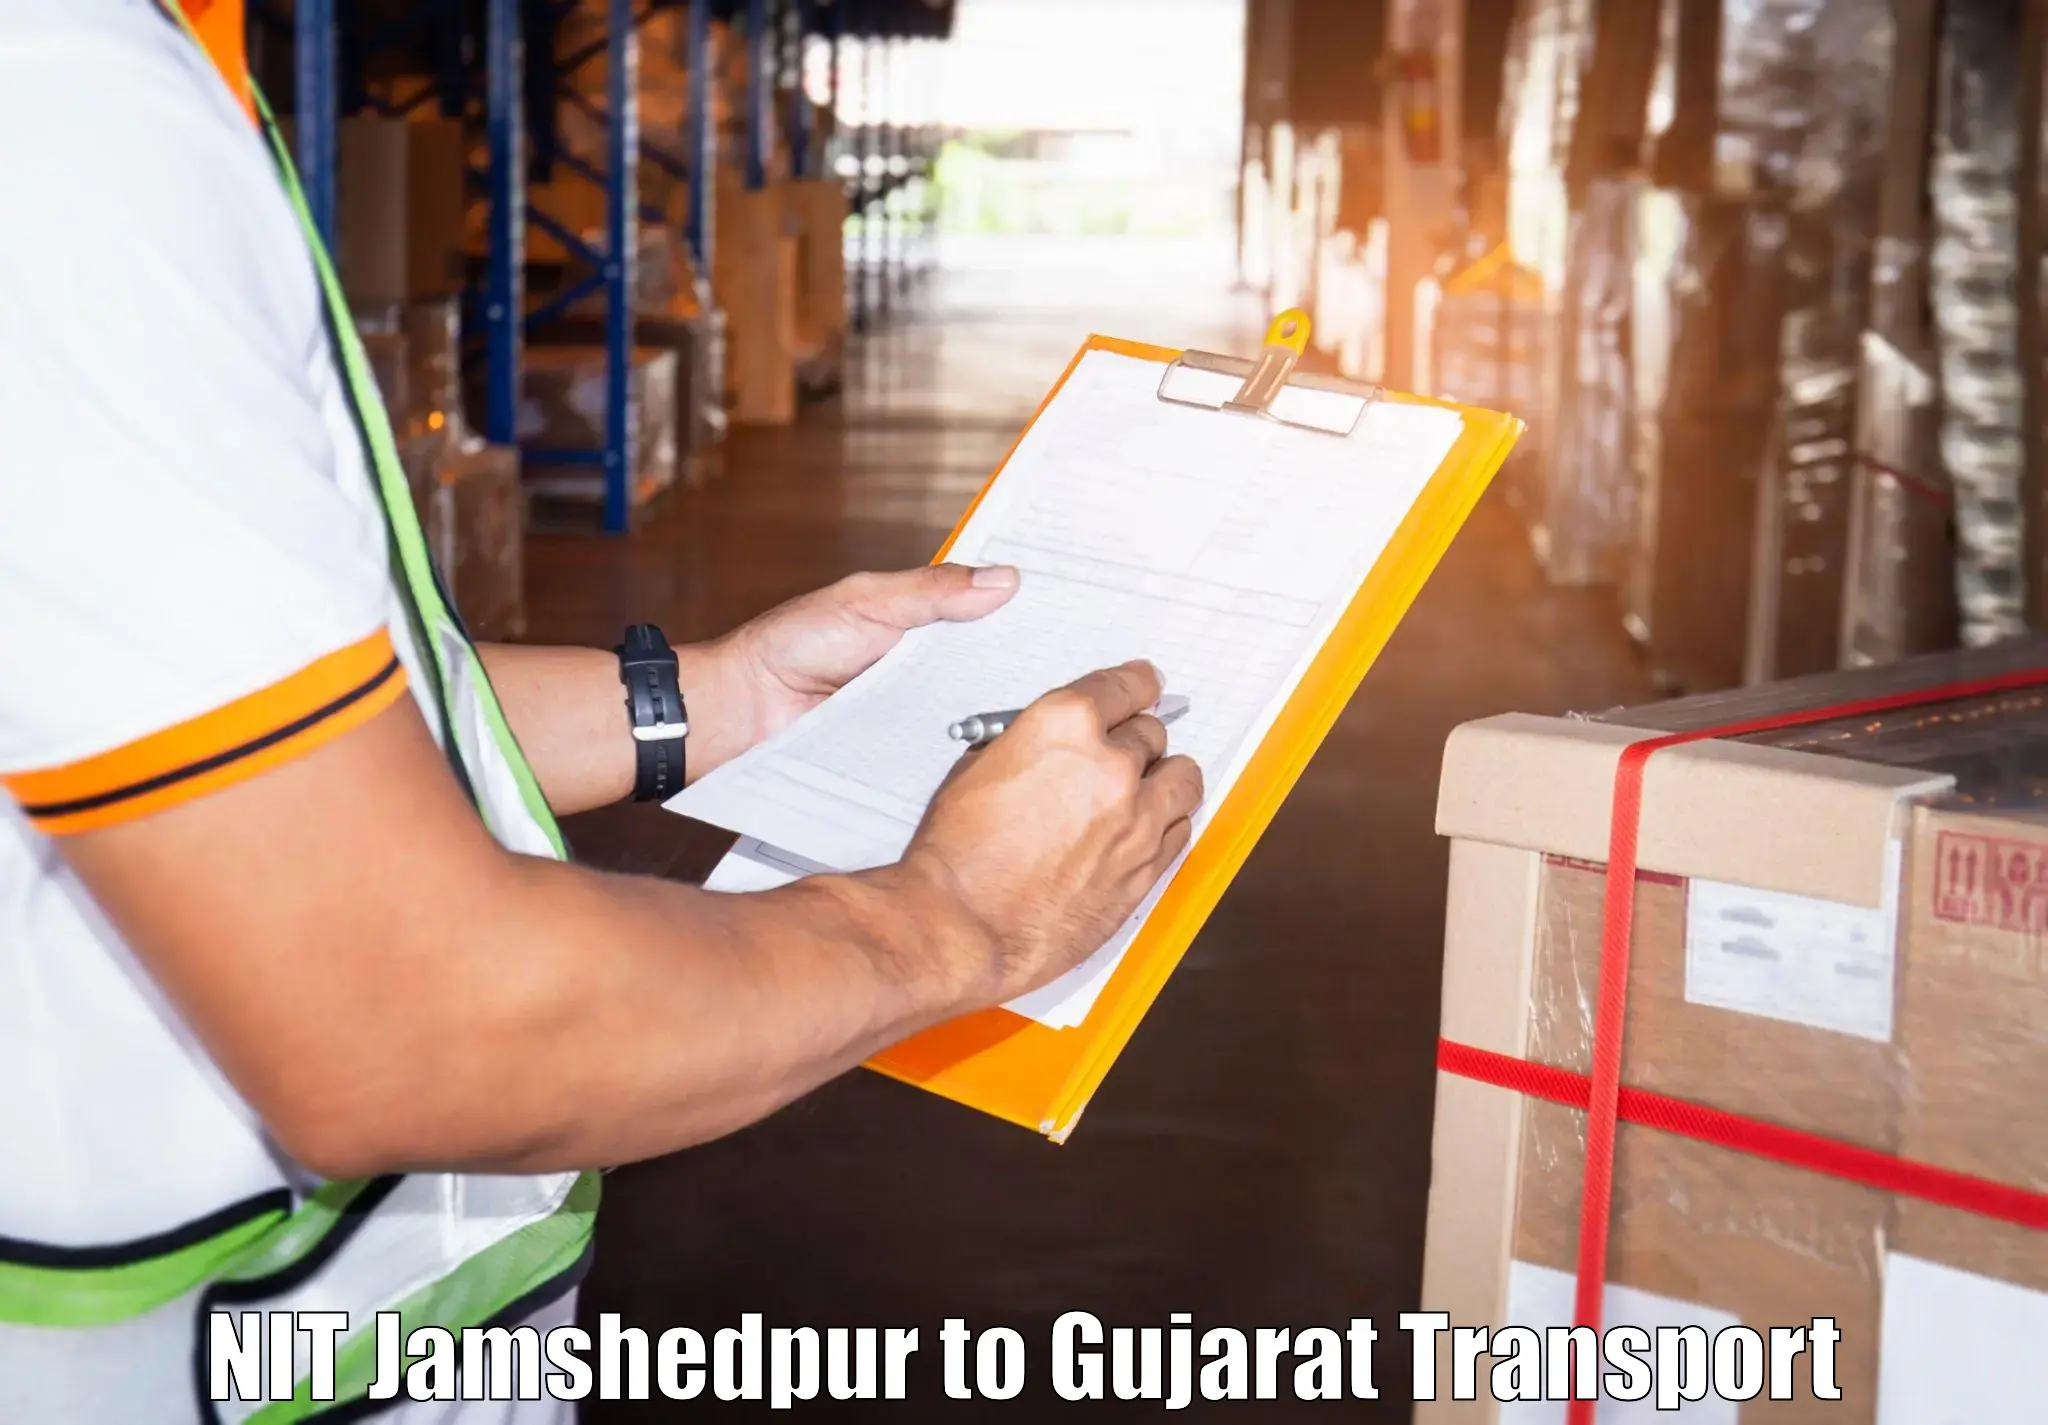 Daily parcel service transport NIT Jamshedpur to Viramgam